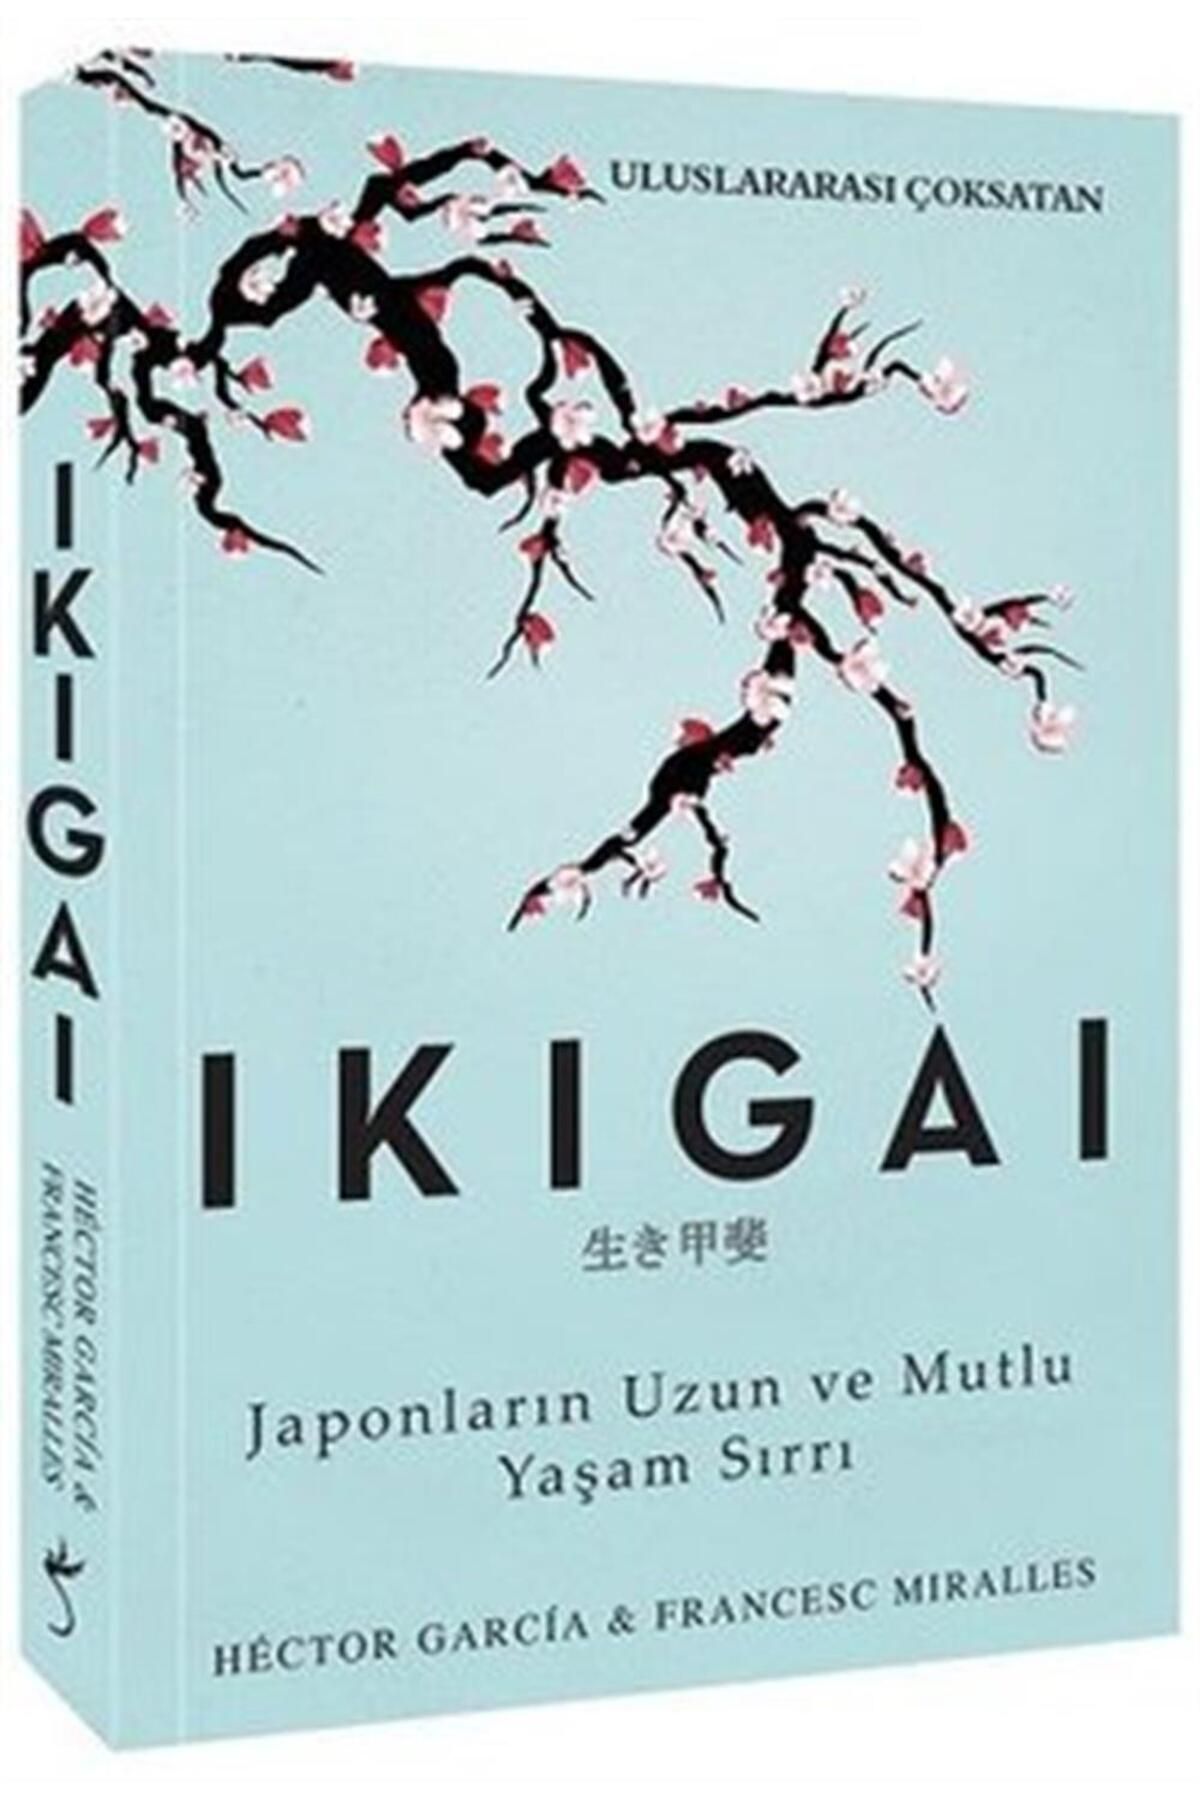 İndigo Kitap I?kigai - Japonların Uzun Ve Mutlu Yaşam Sırrı